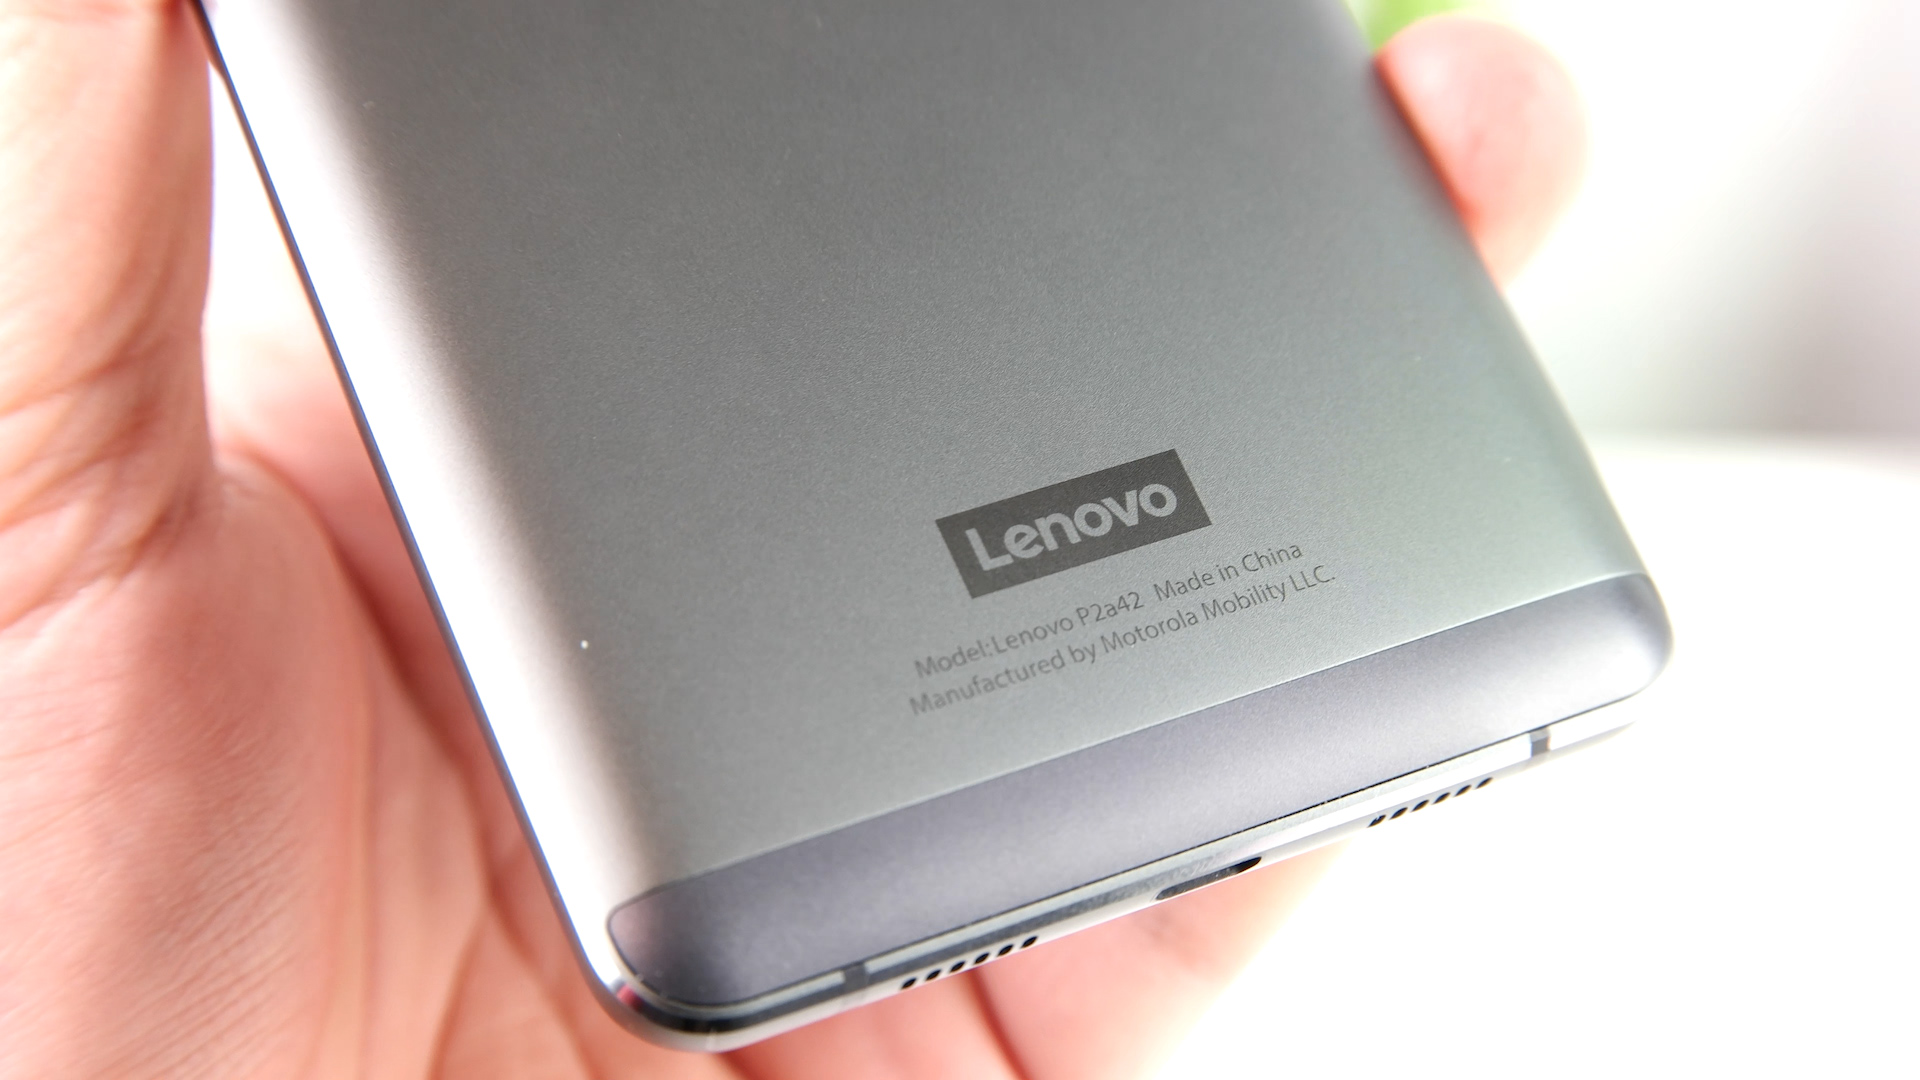 Lenovo P2 inceleme videosu: Pil canavarı telefon mercek altında